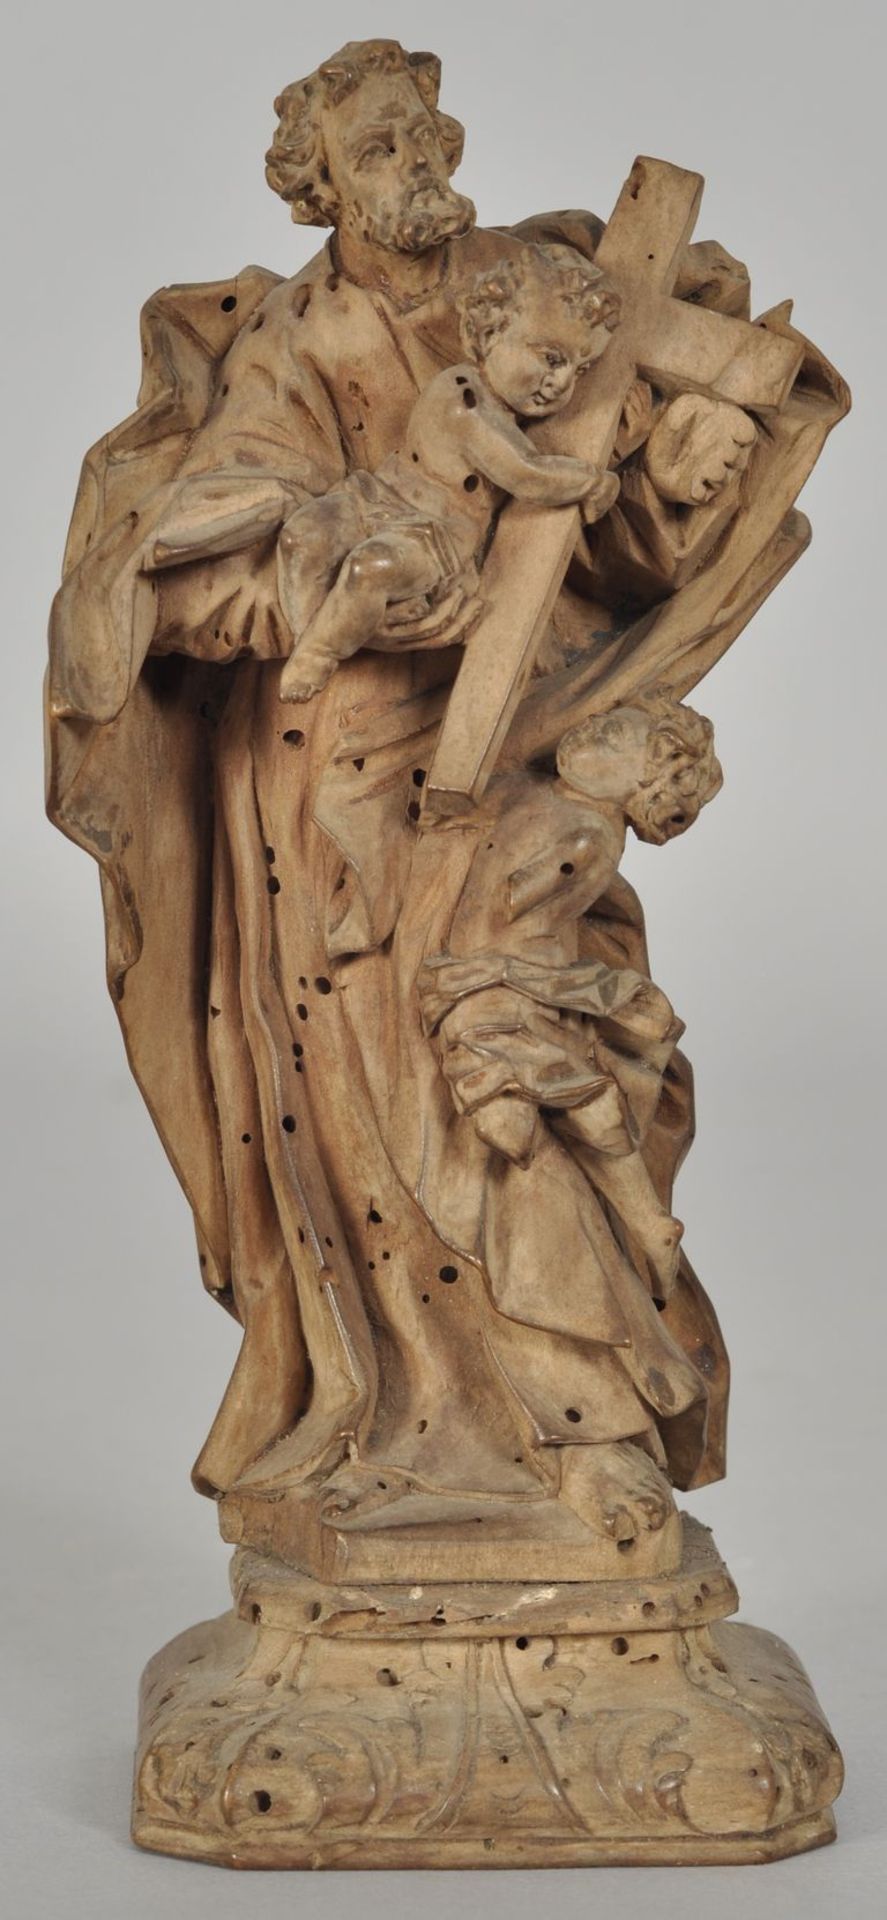 Statuette Joseph mit dem Jesusknaben und einem Engel,böhmisch, um 1700 Buchsbaum, vollplastisch